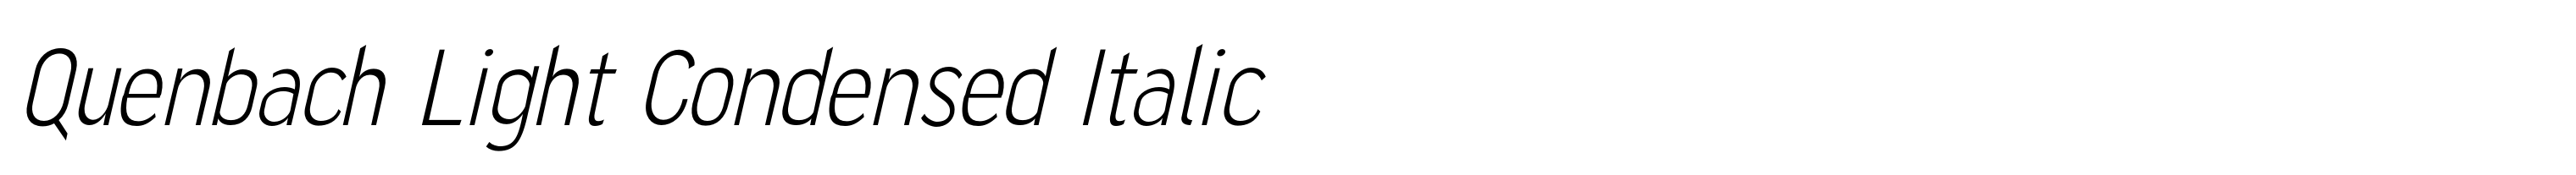 Quenbach Light Condensed Italic